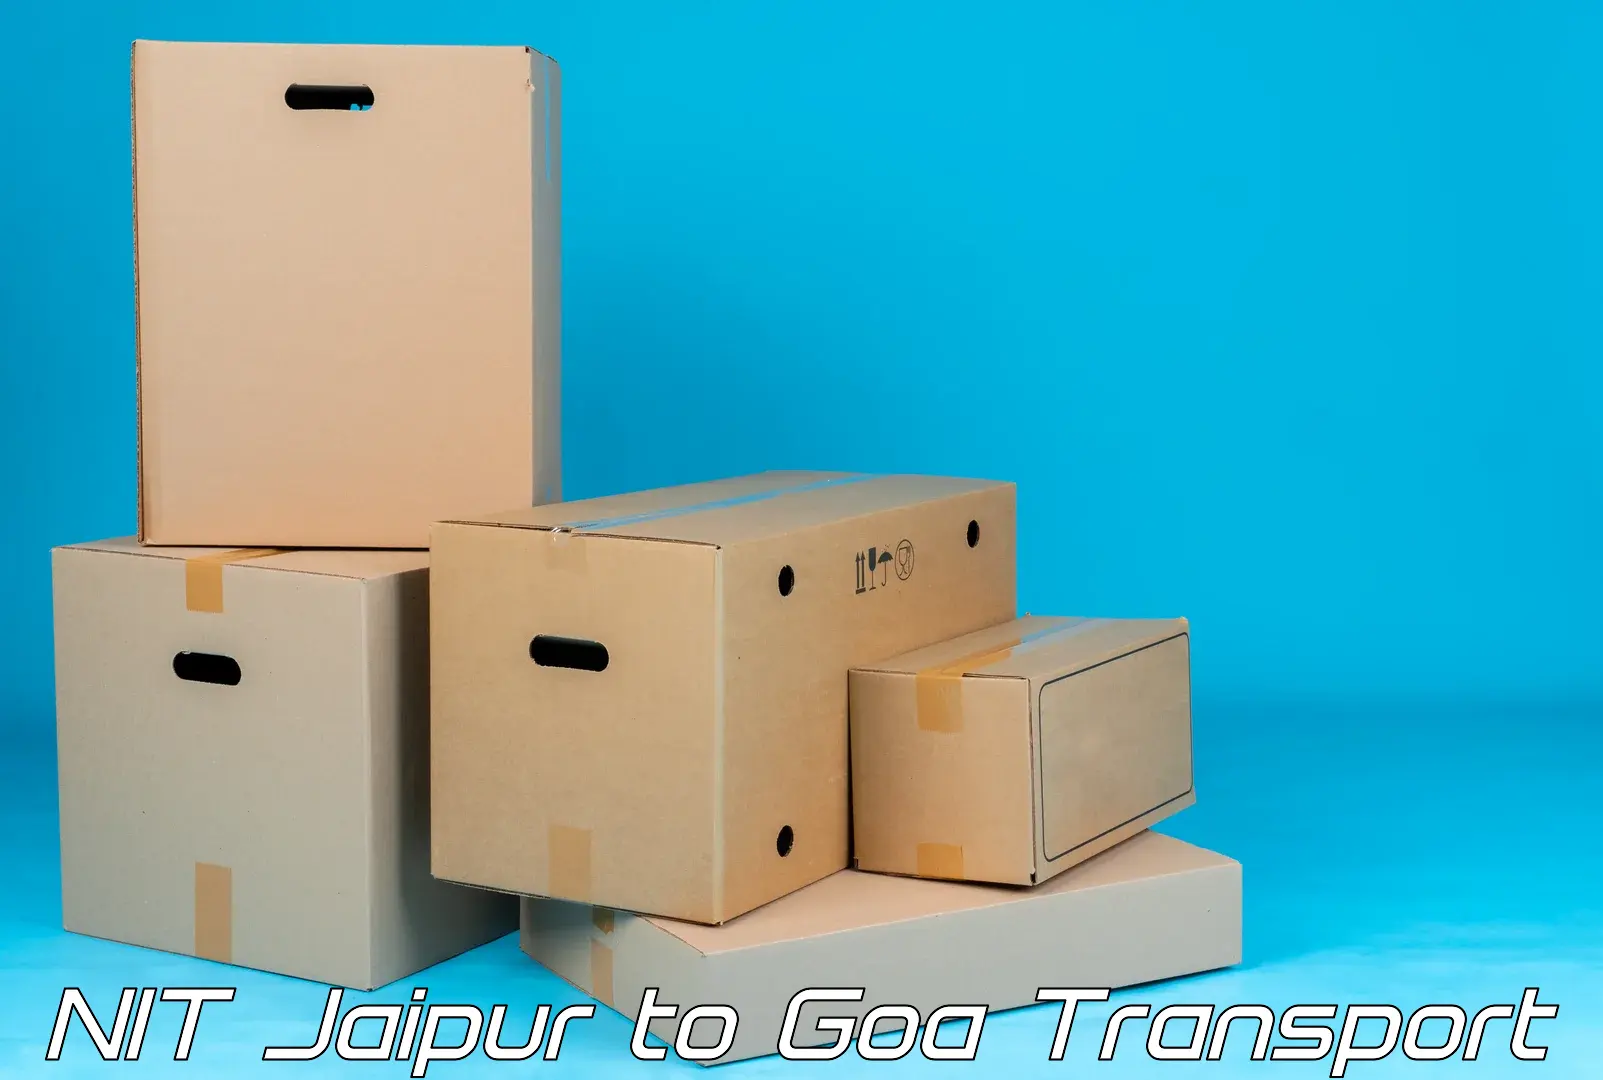 Road transport online services NIT Jaipur to Panjim